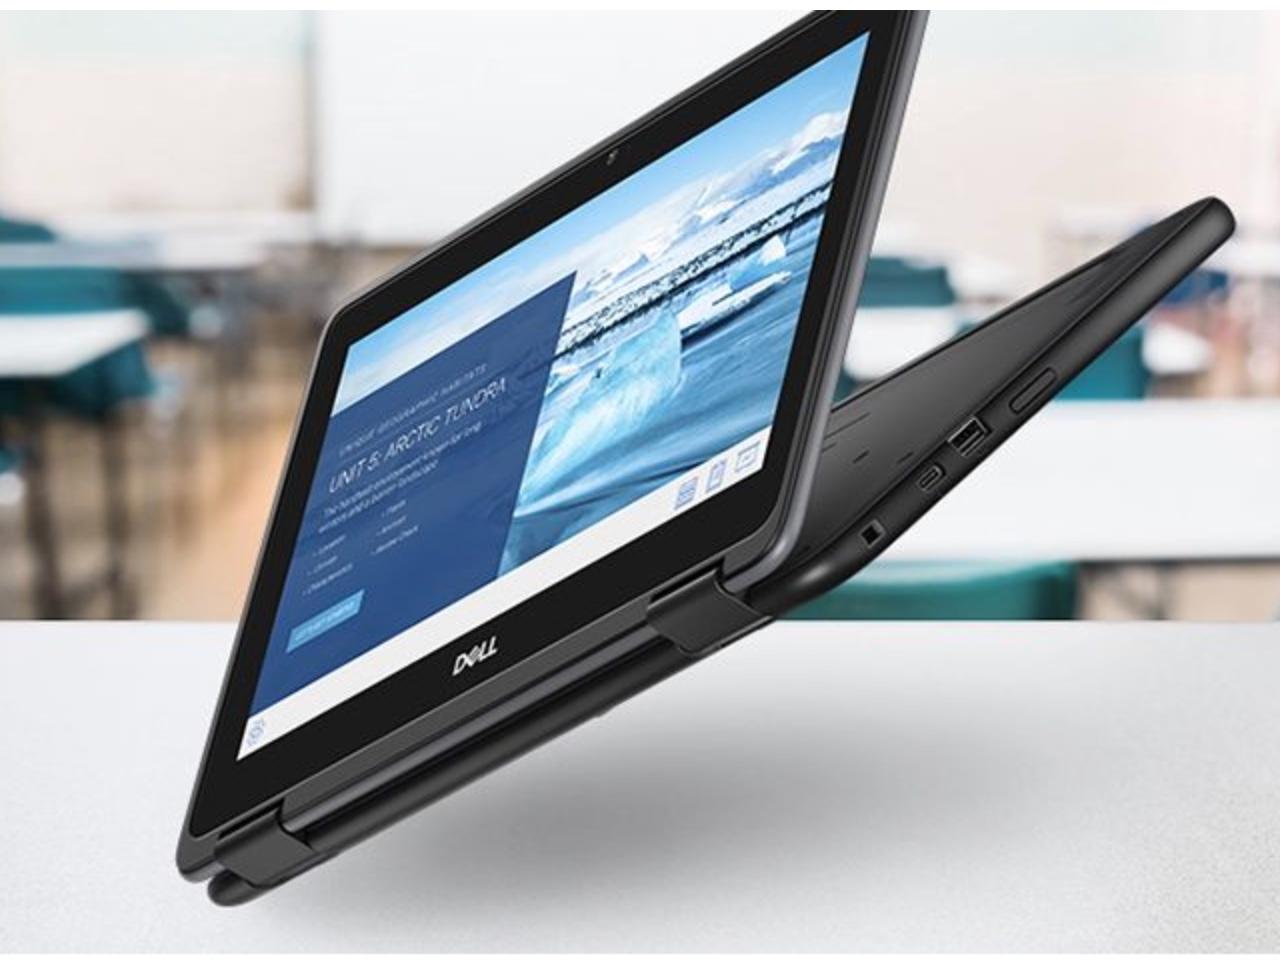 Dell Chromebook 11 3100